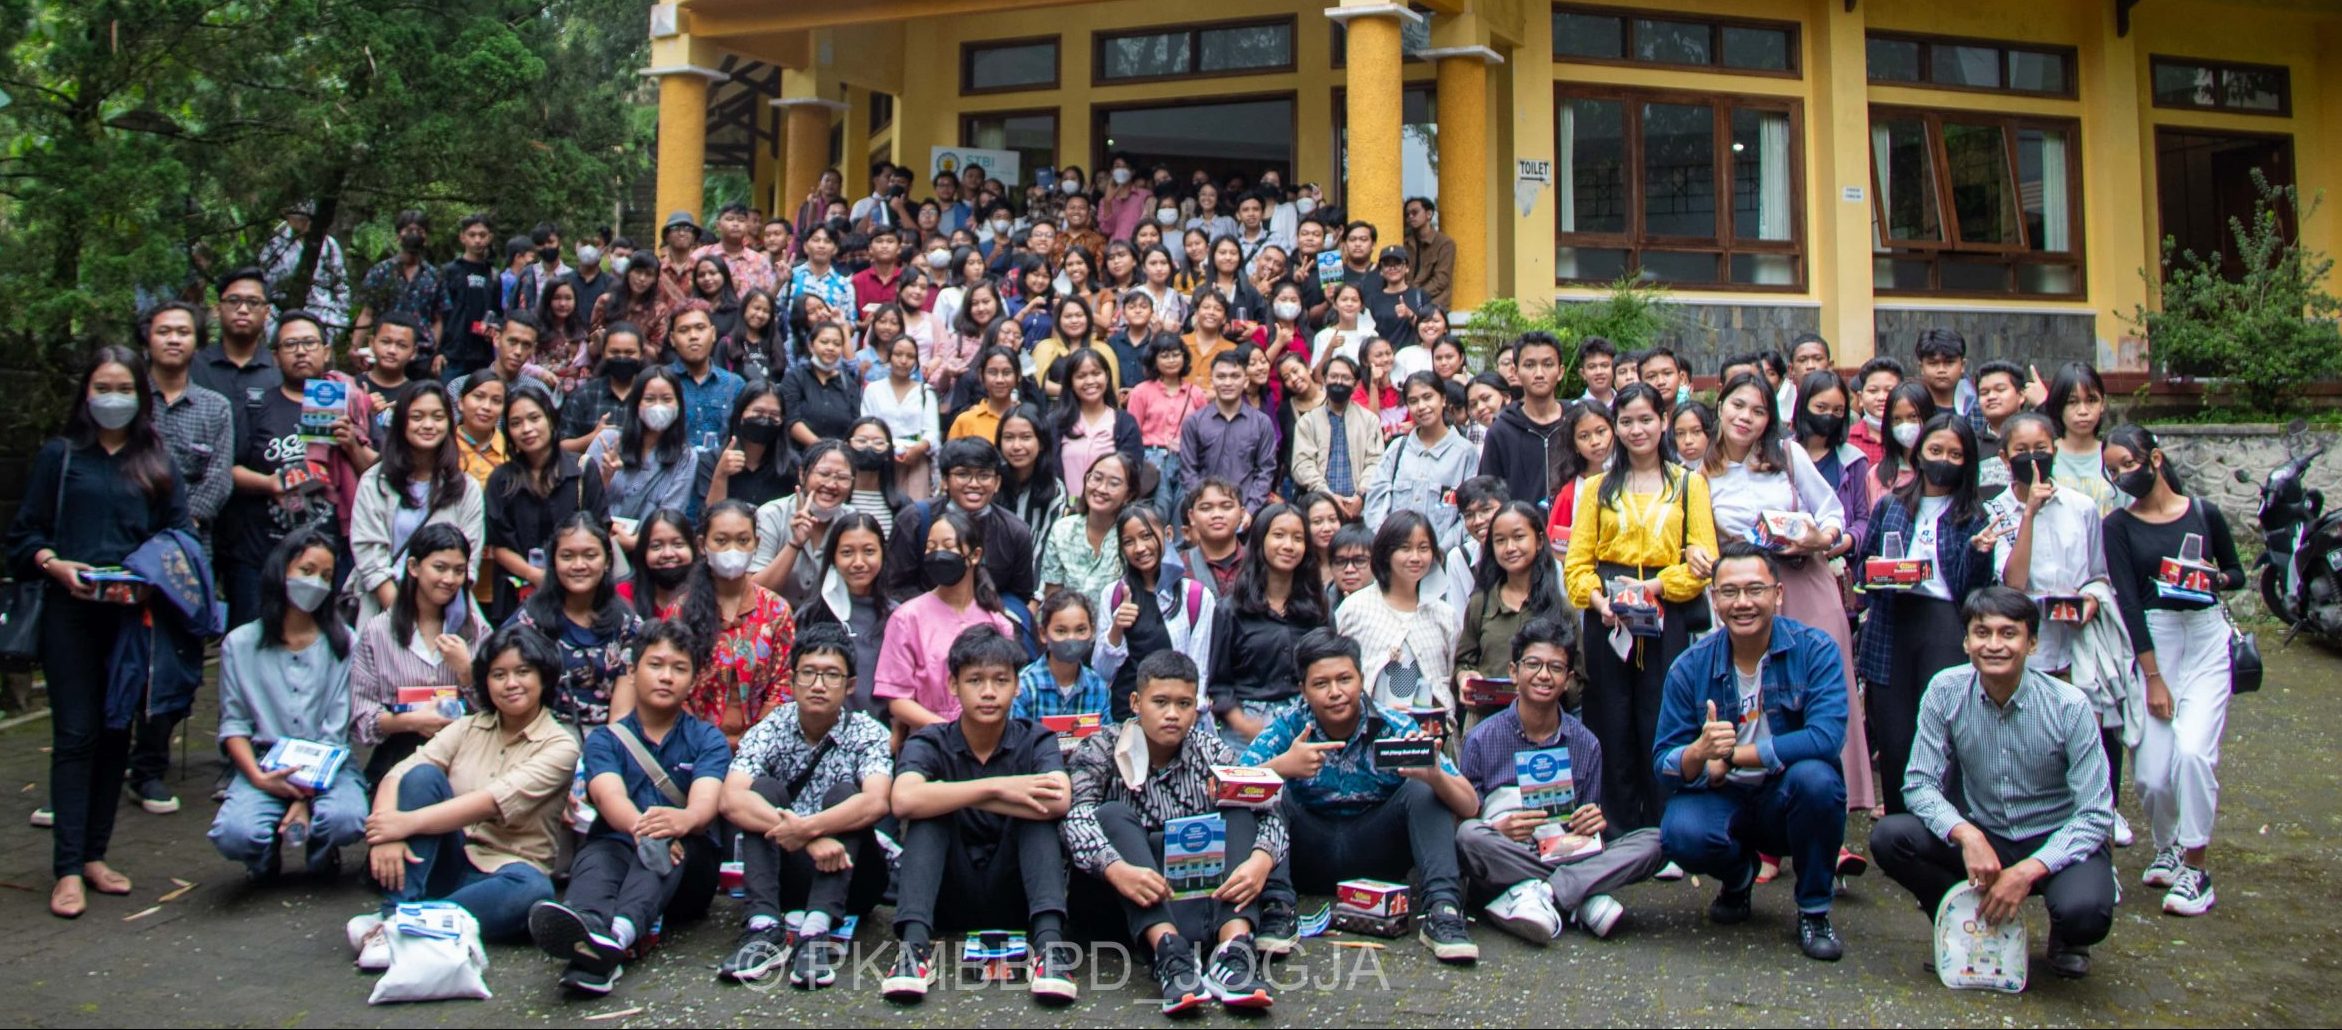 Kunjungan STBI ke BPD Yogyakarta